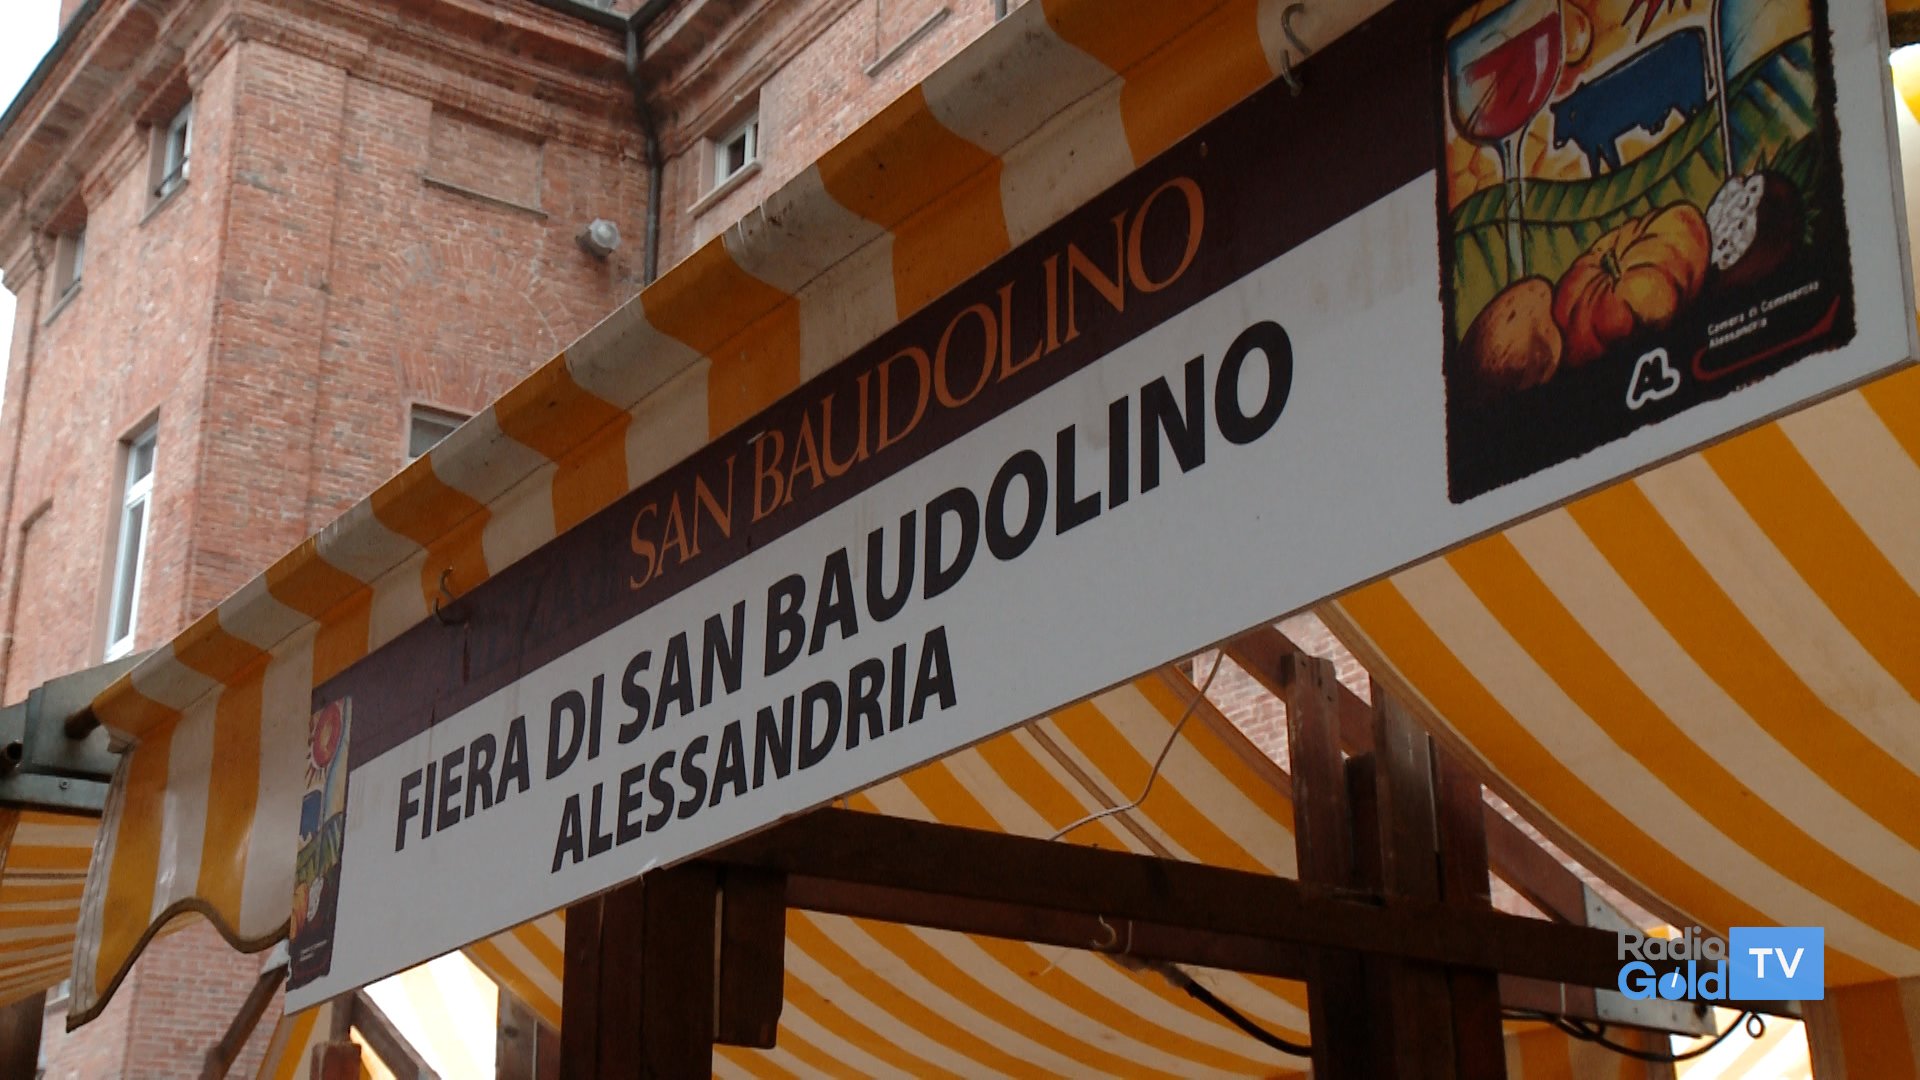 Tartufi, degustazioni, eventi e negozi aperti per la domenica di San Baudolino